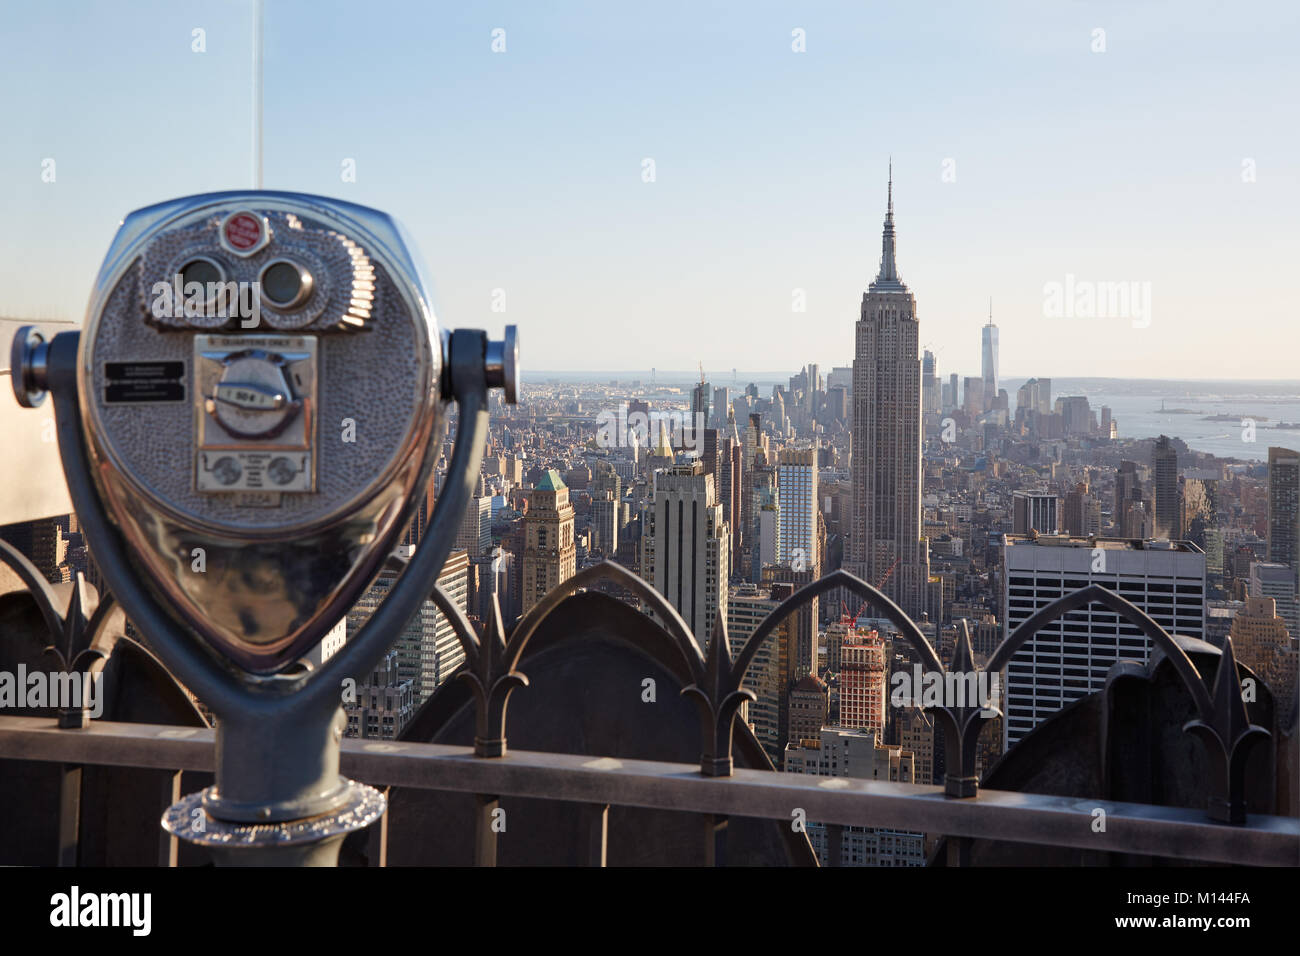 Jumelles sur le Rockefeller Center avec l'Empire State Building et vue sur la ville dans la lumière chaude à New York Banque D'Images